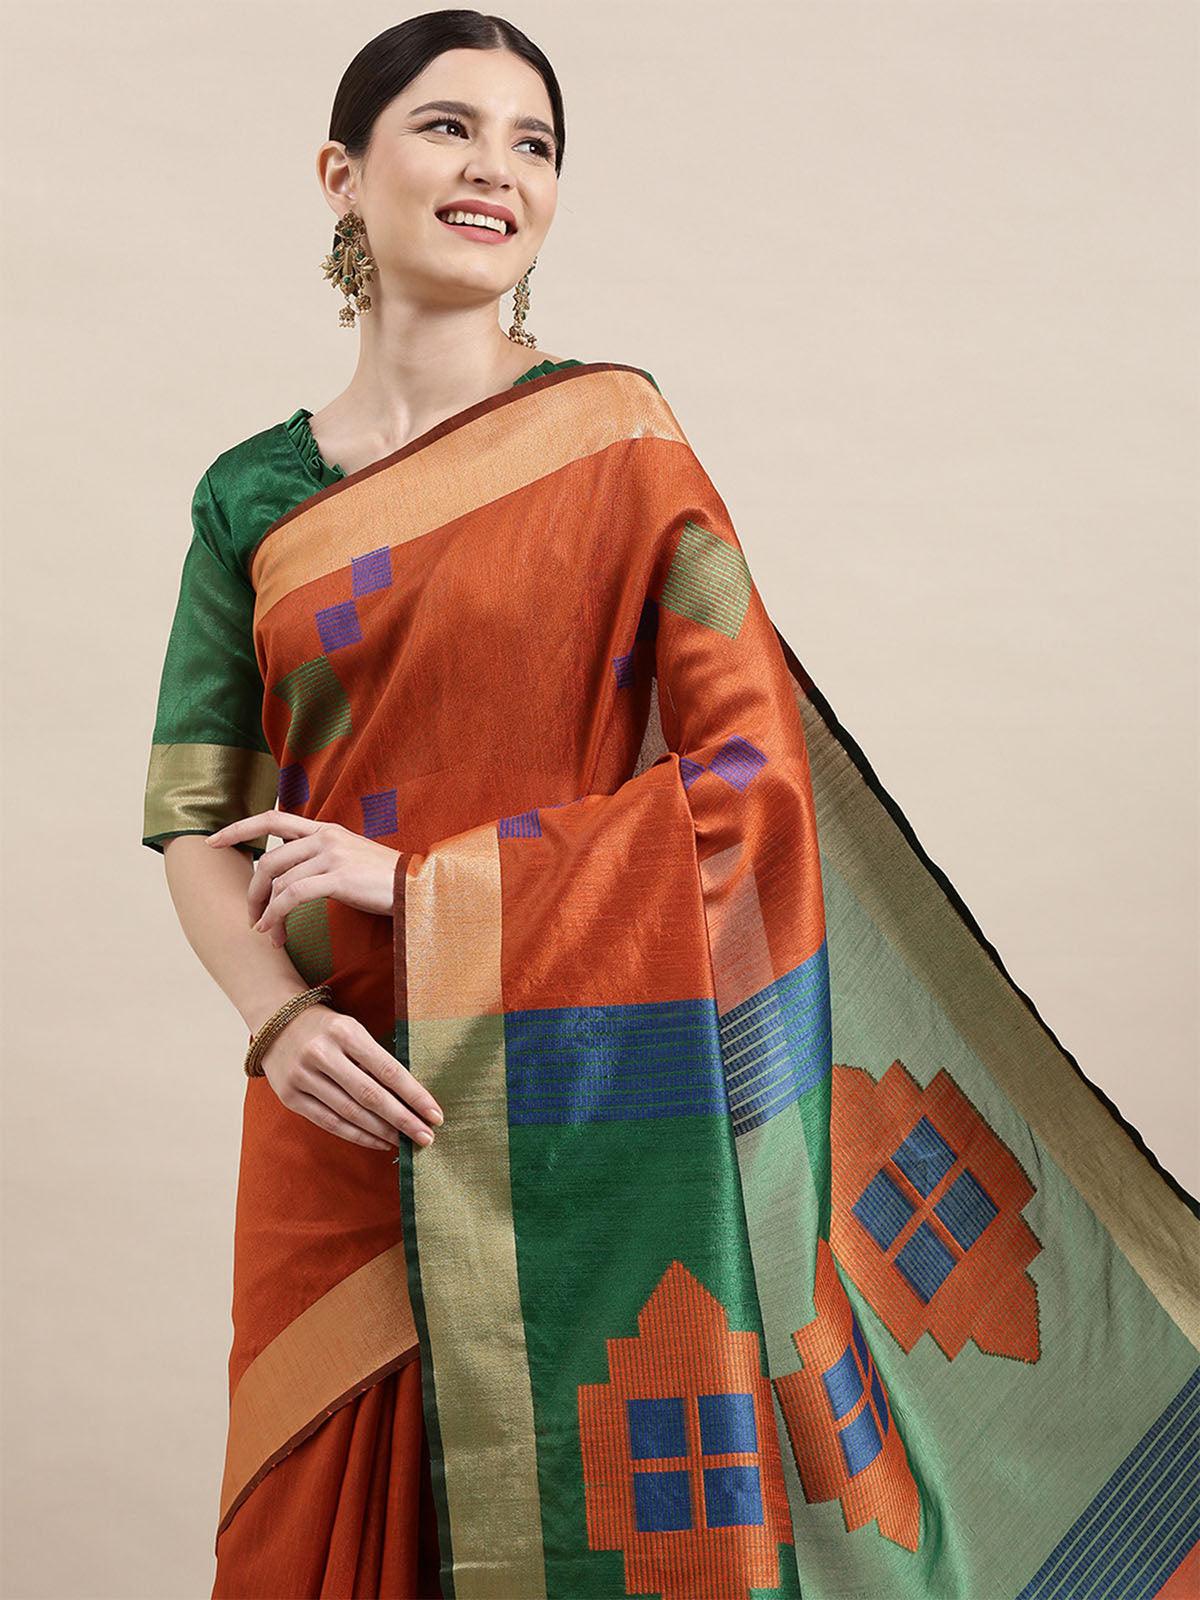 Women's Cotton Silk Orange Woven Design Handloom Saree With Blouse Piece - Odette